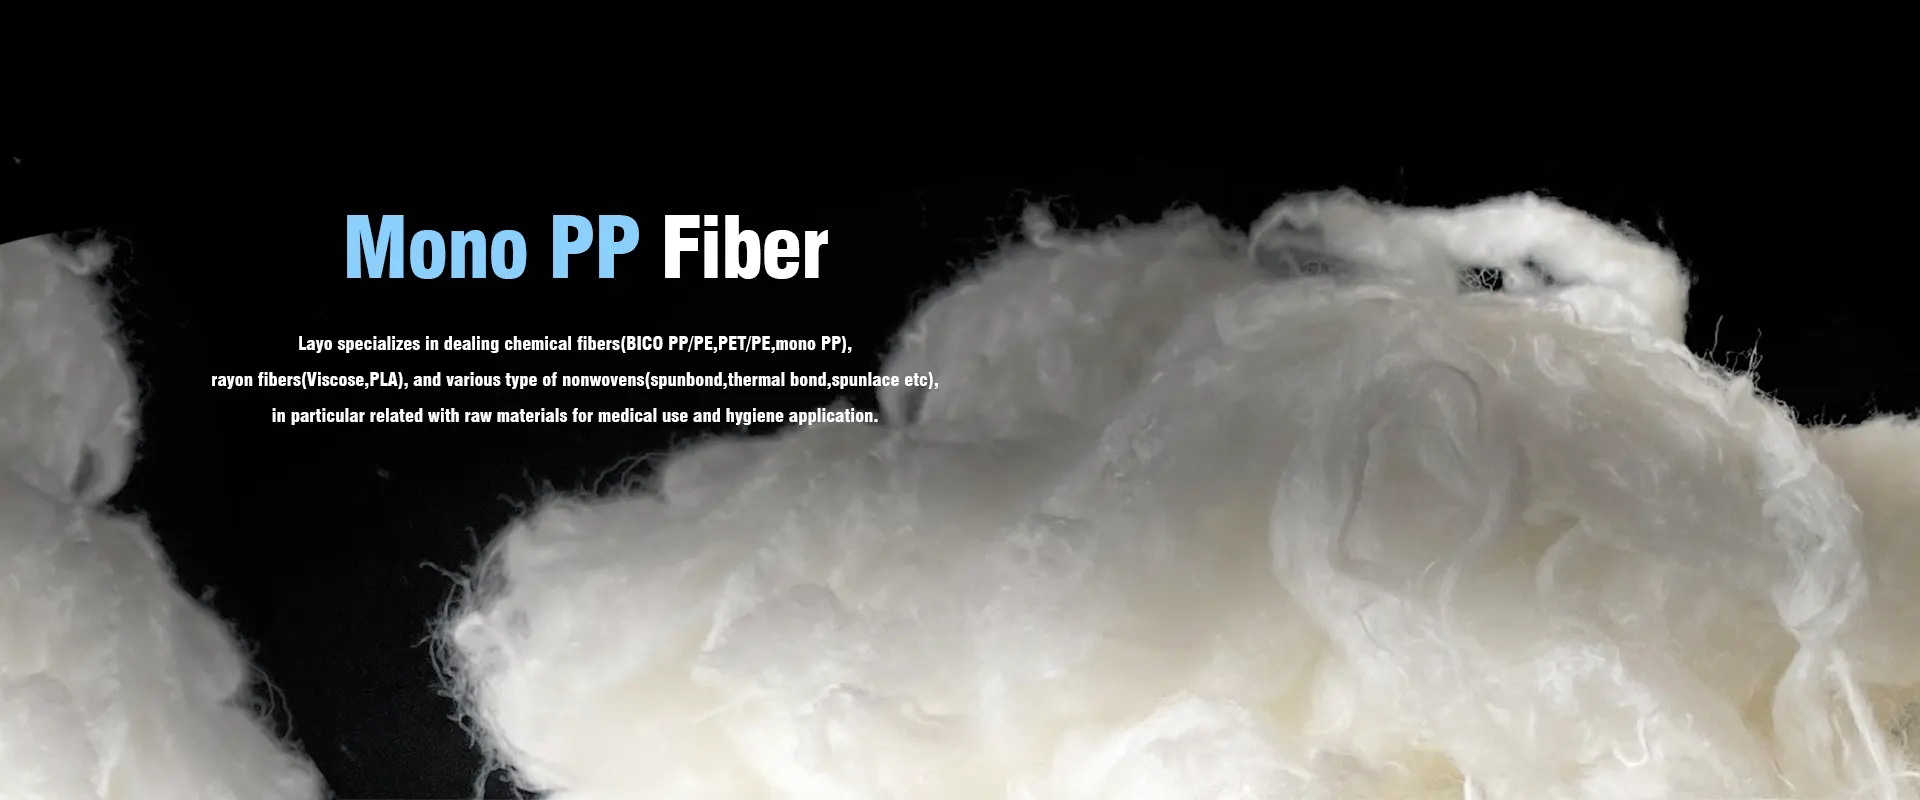 Fornitori e produttori di fibre mono PP